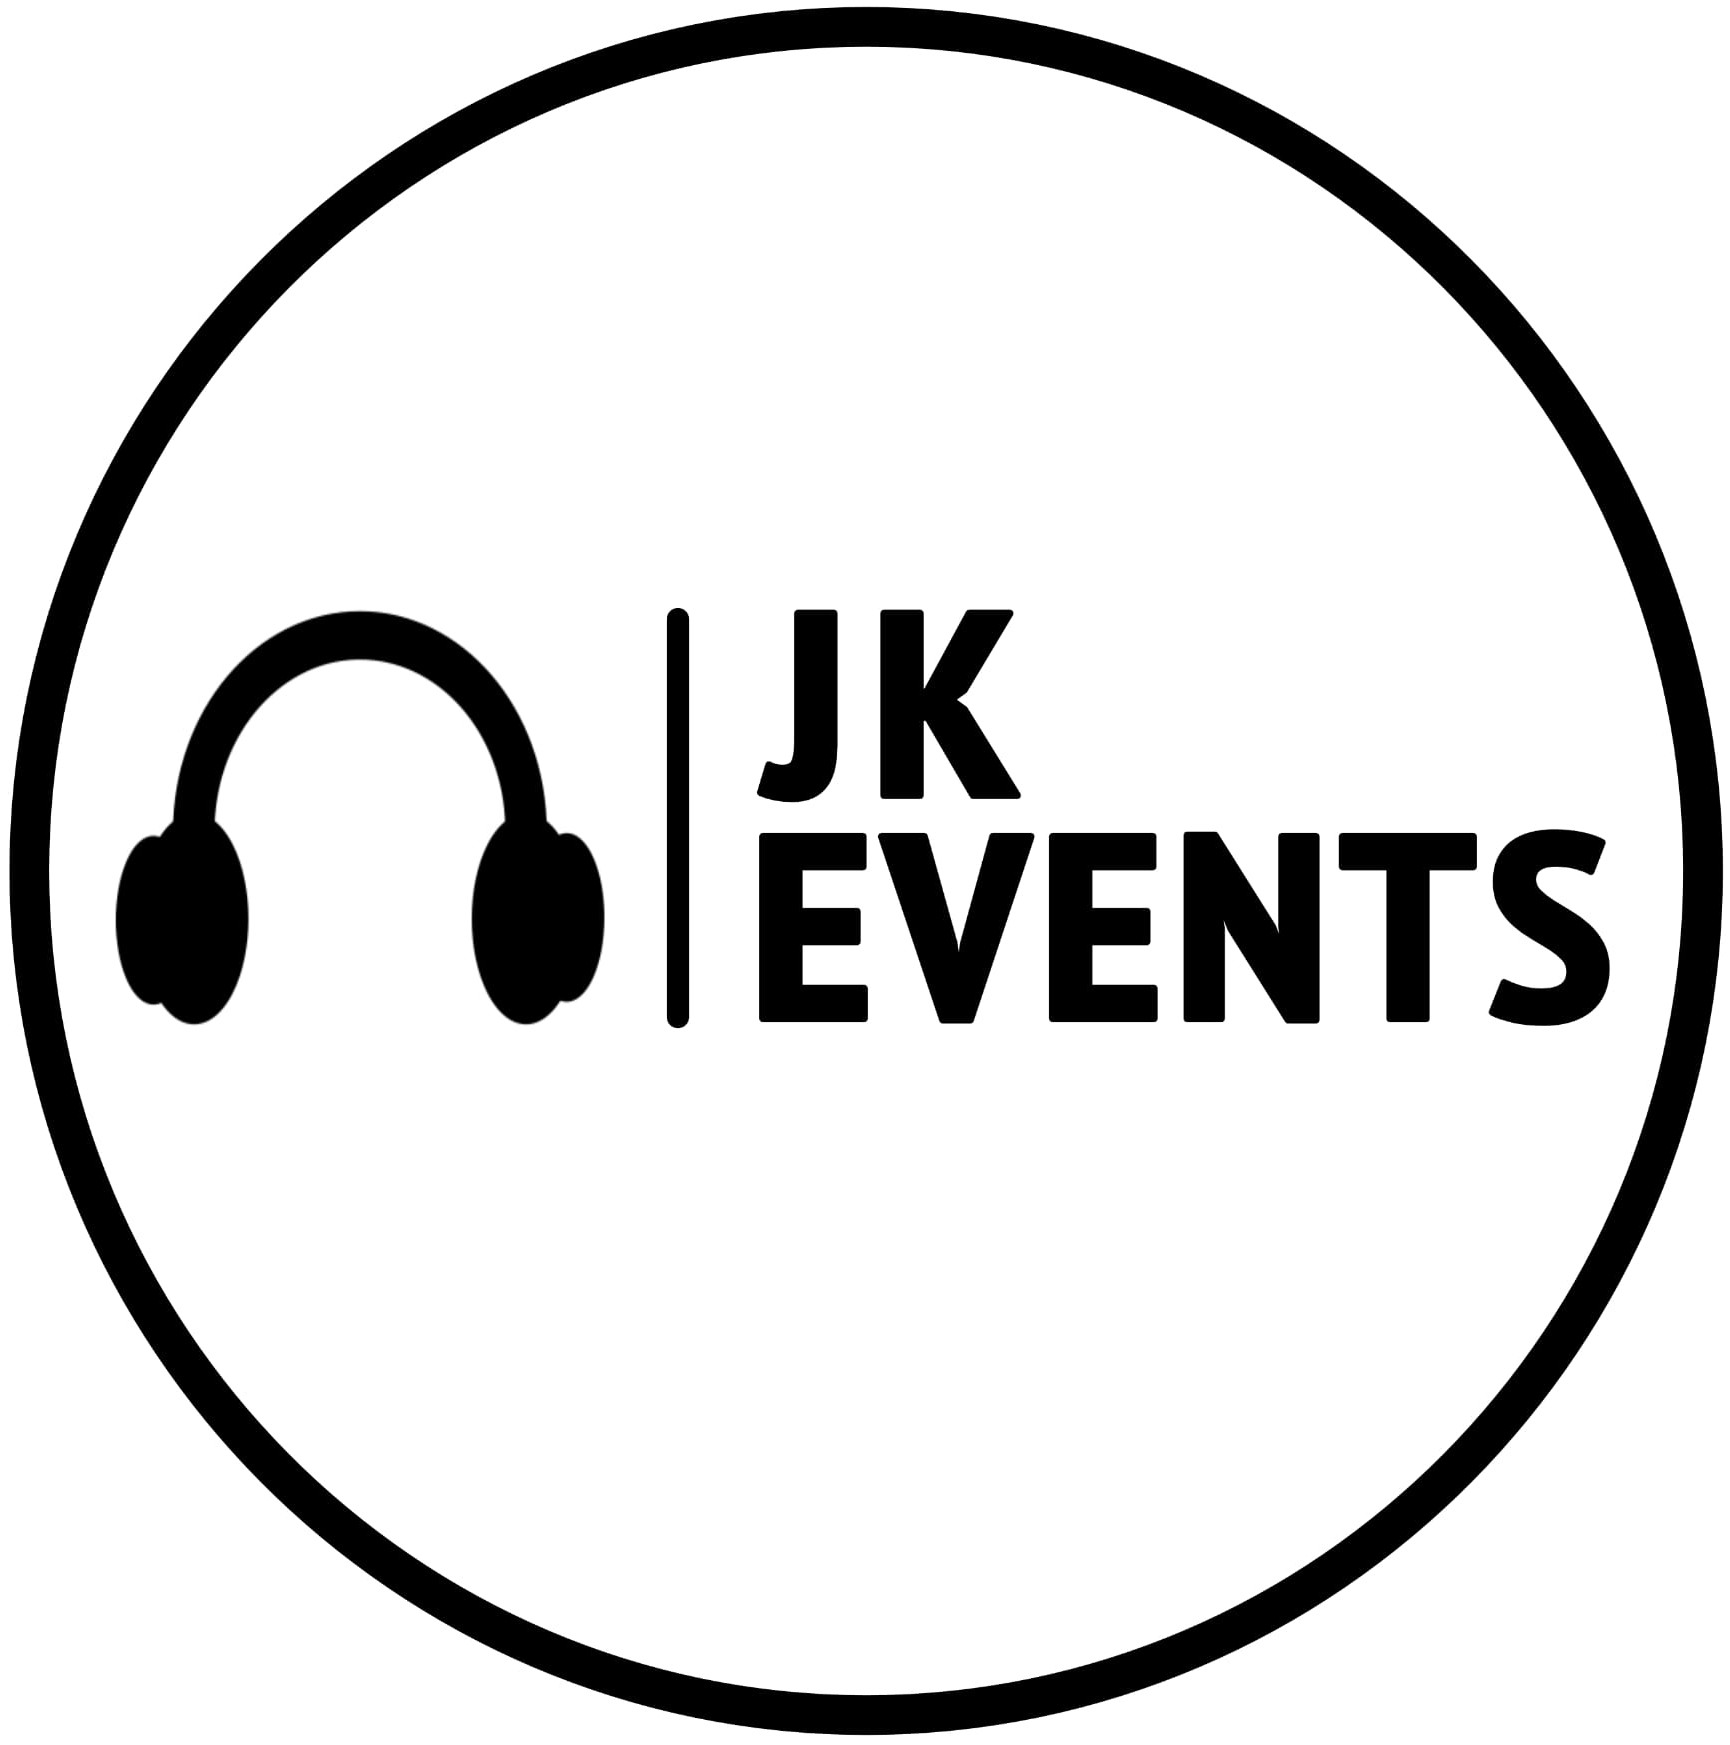 JK Events